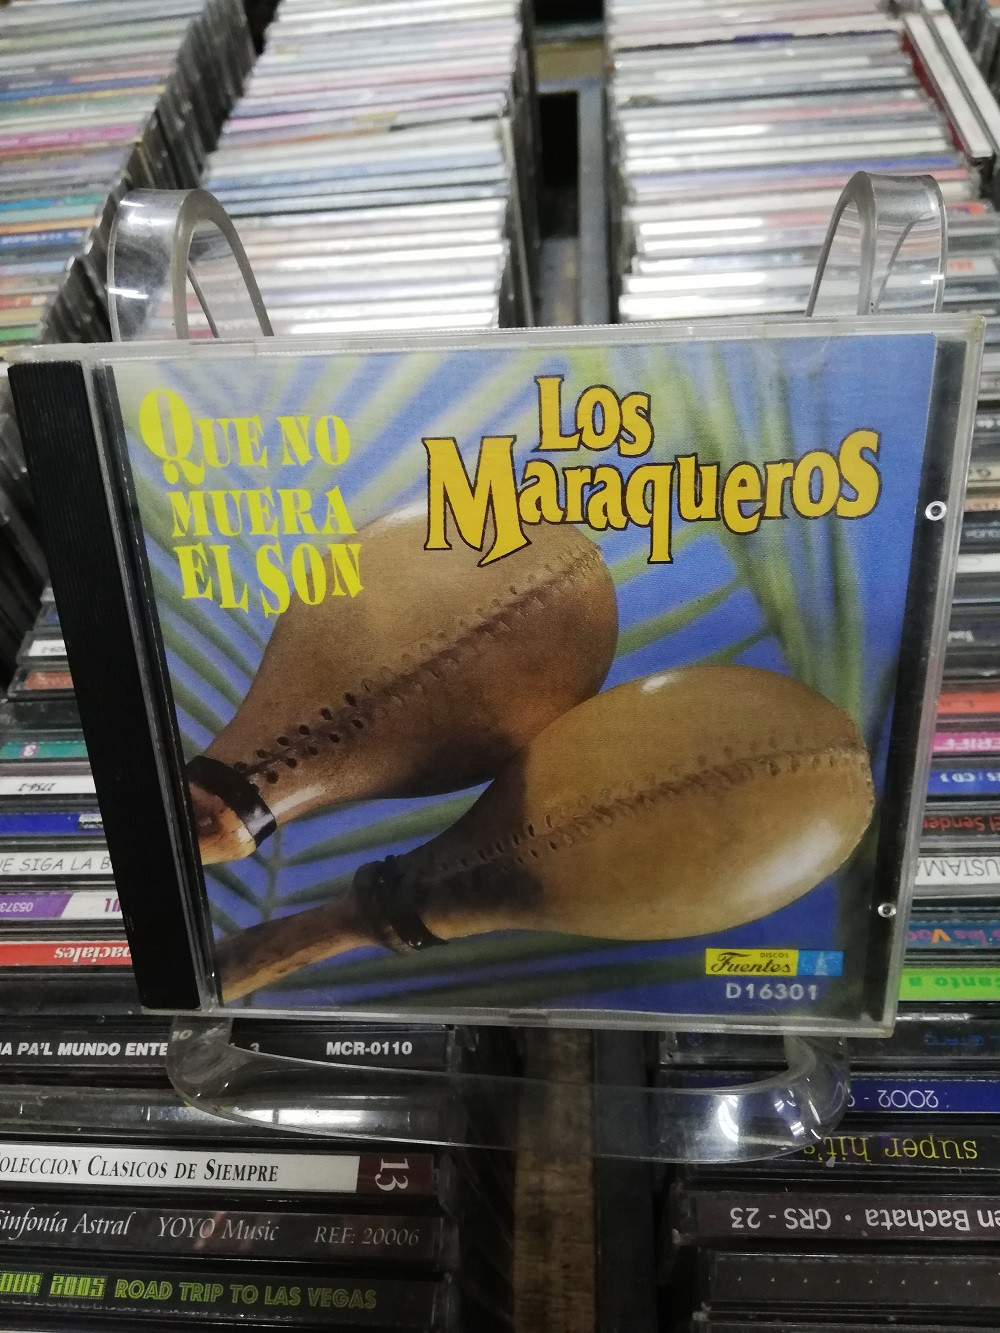 Imagen CD LOS MARAQUEROS - QUE NO MUERA EL SON